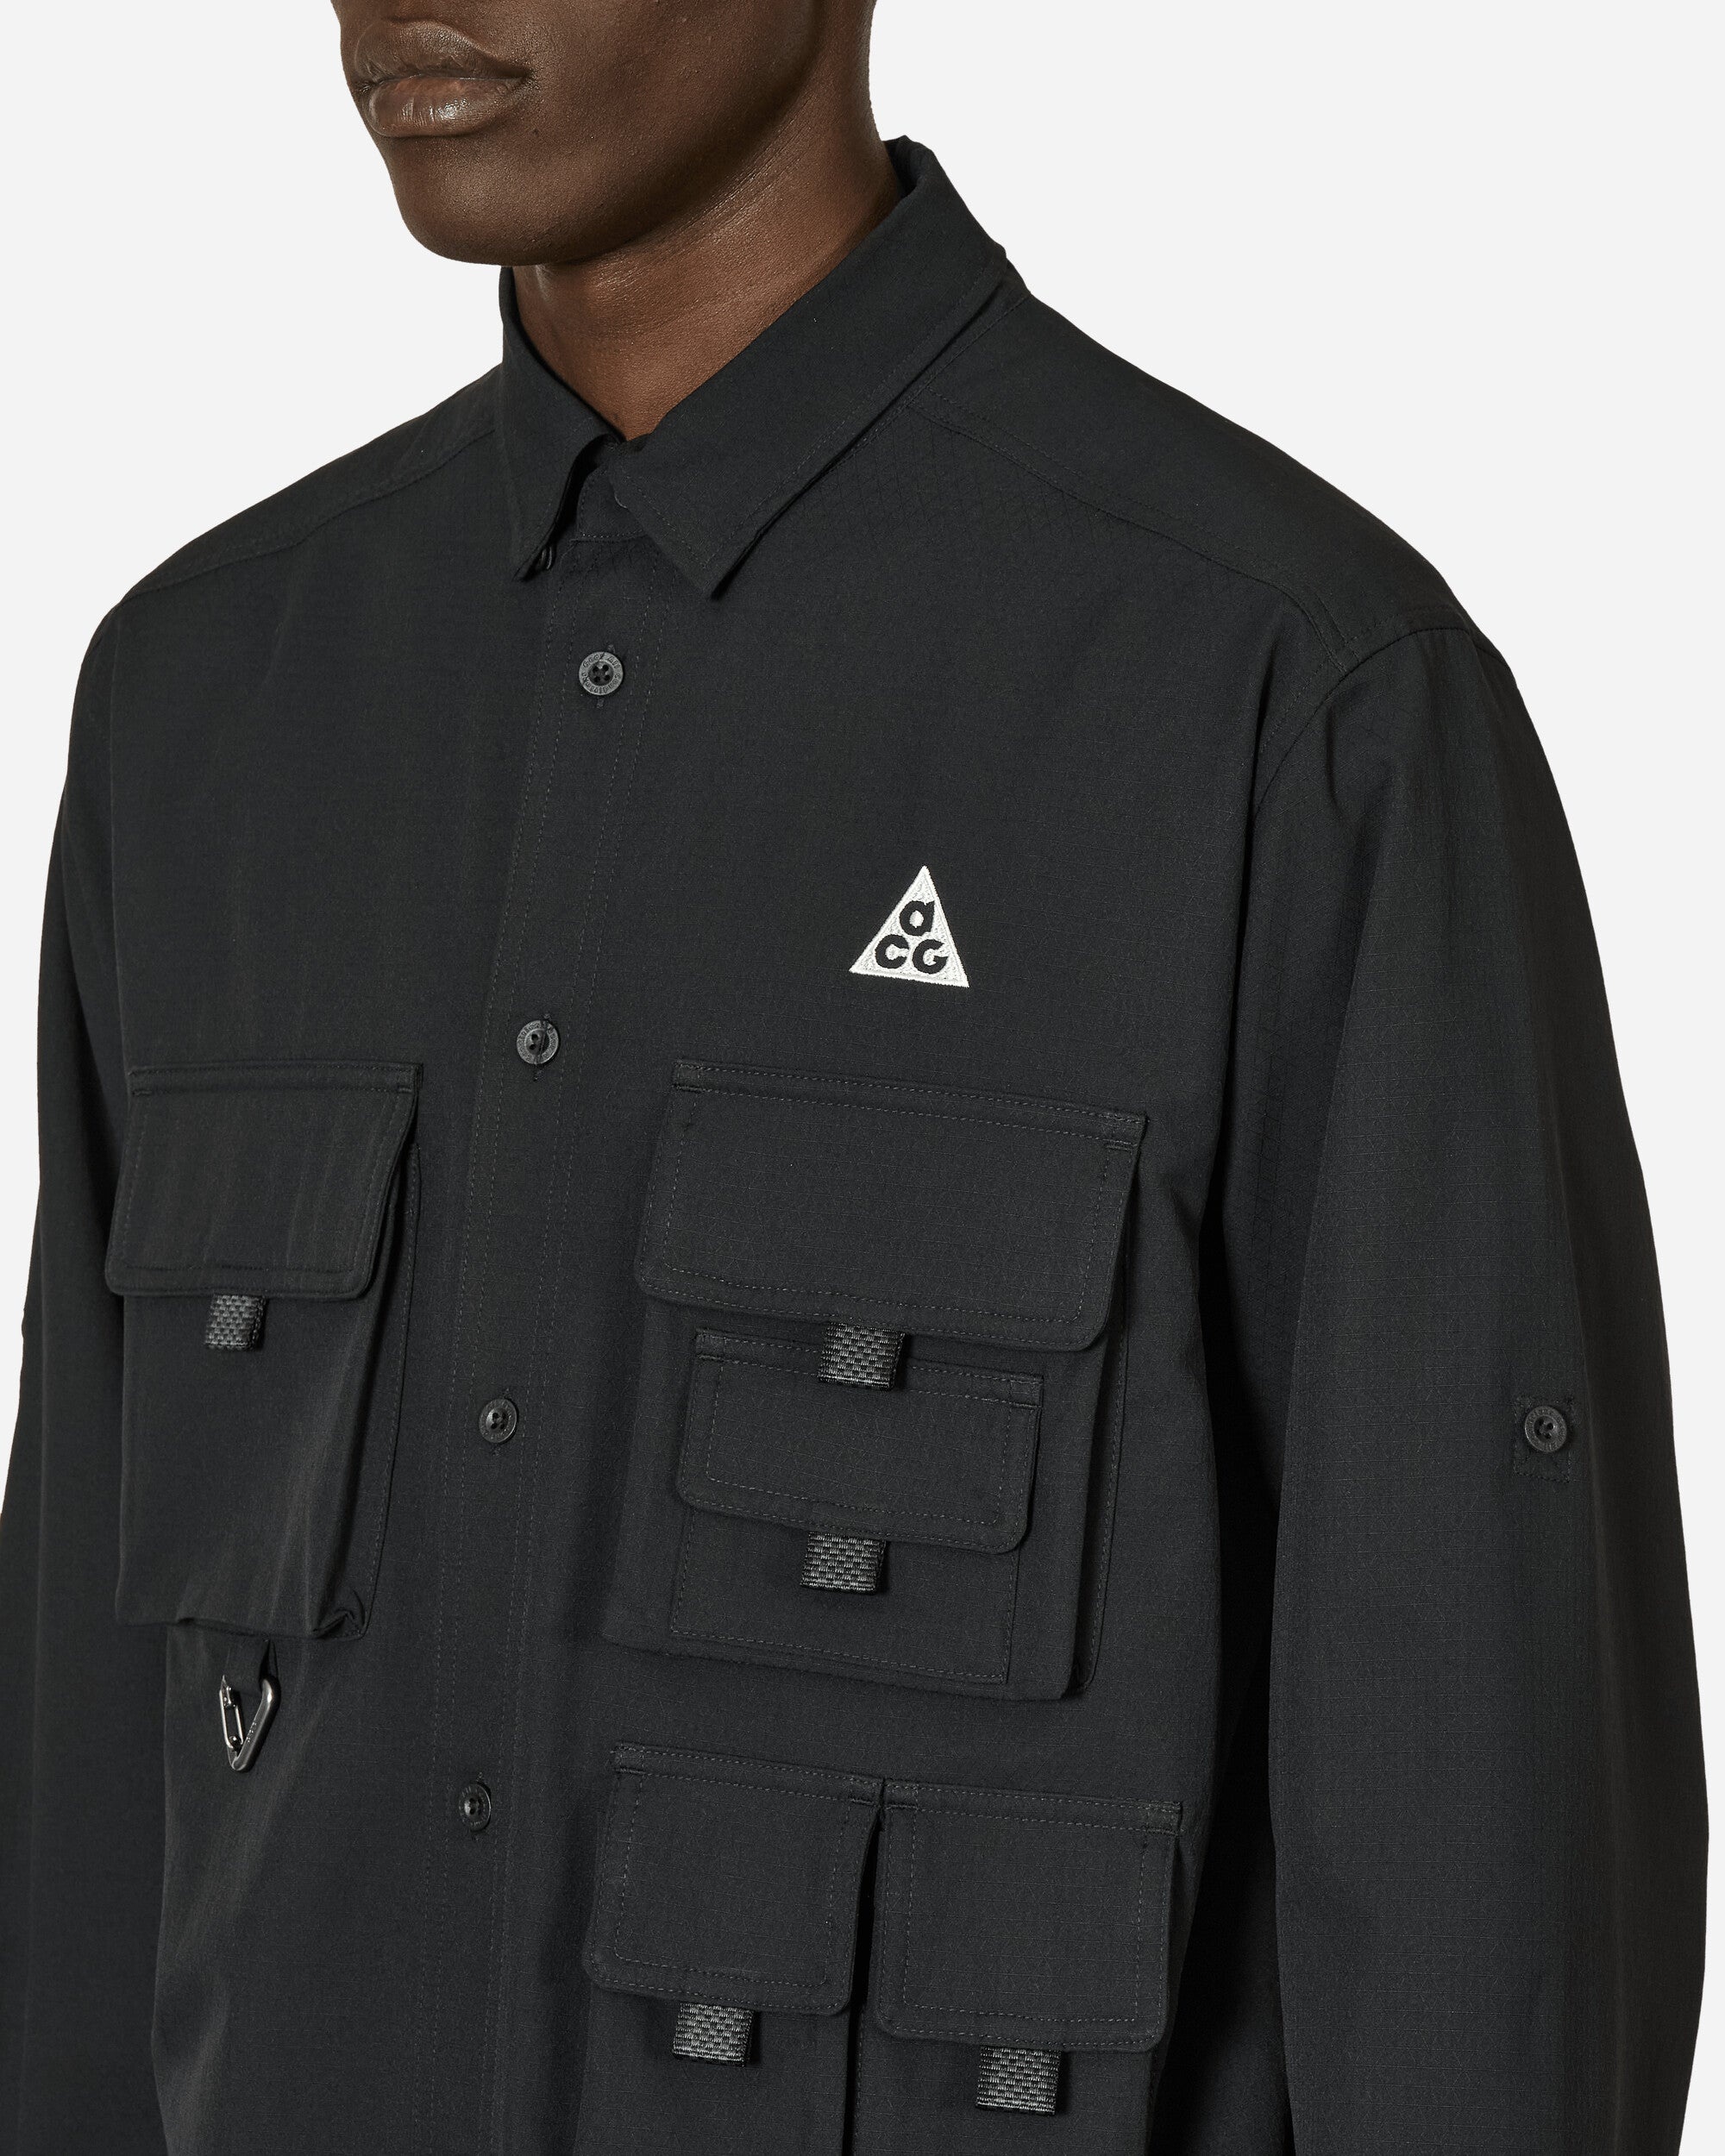 ACG Dri-FIT UV 'Devastation Trail' Longsleeve Shirt Black - 5